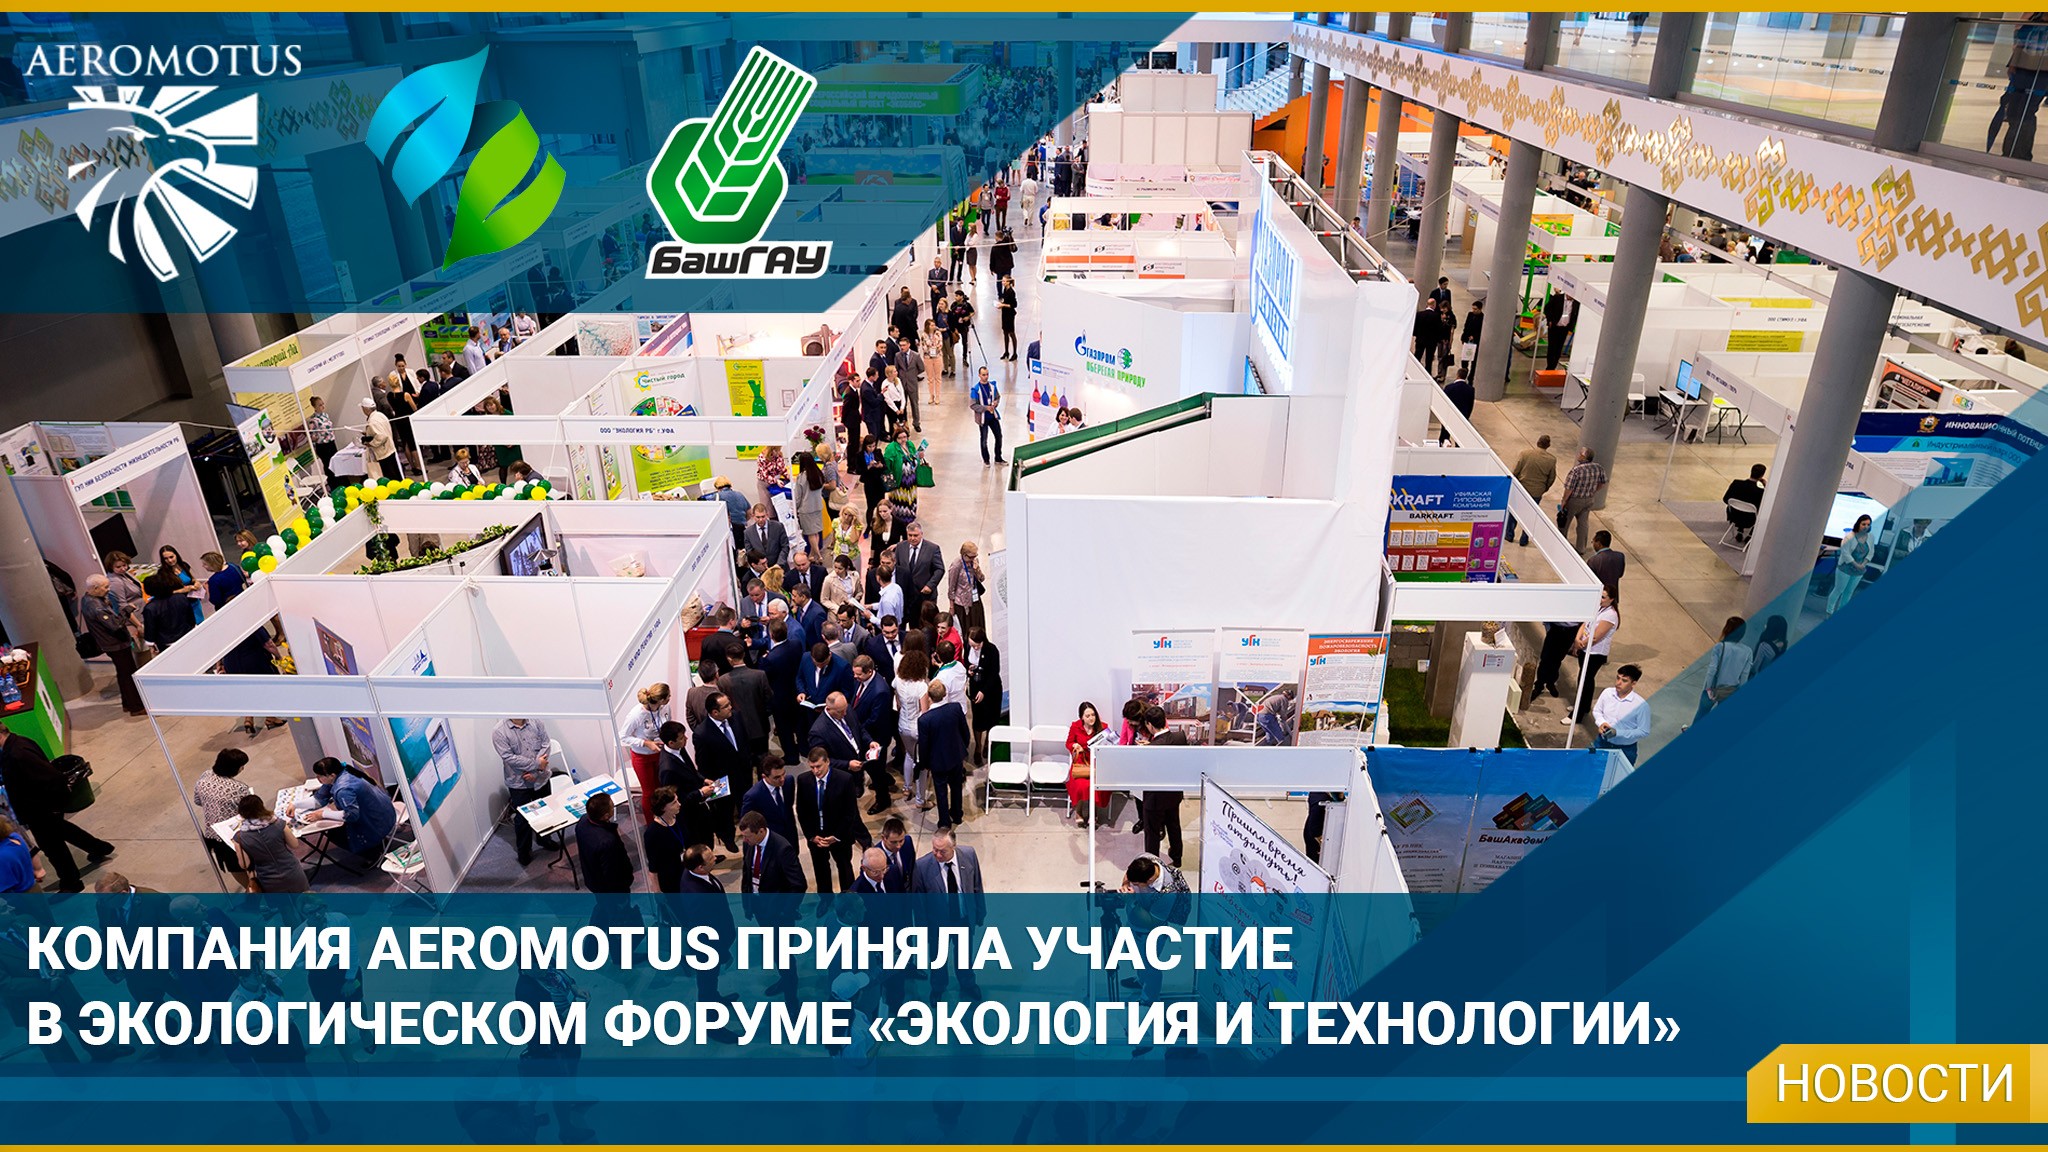 Компания Aeromotus приняла участие в экологическом форуме «Экология и технологии» - Интересная информация